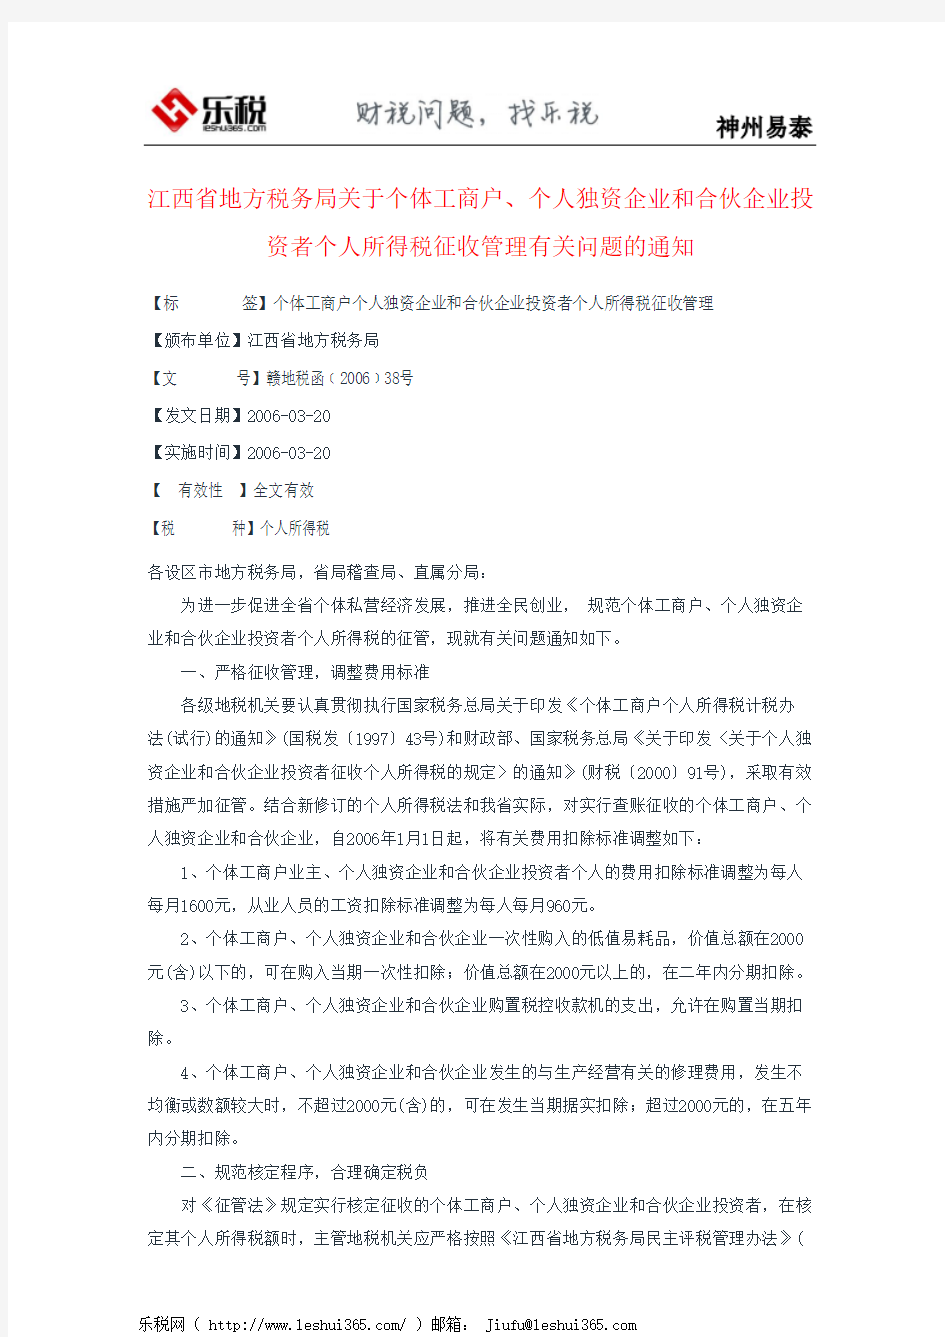 江西省地方税务局关于个体工商户、个人独资企业和合伙企业投资者